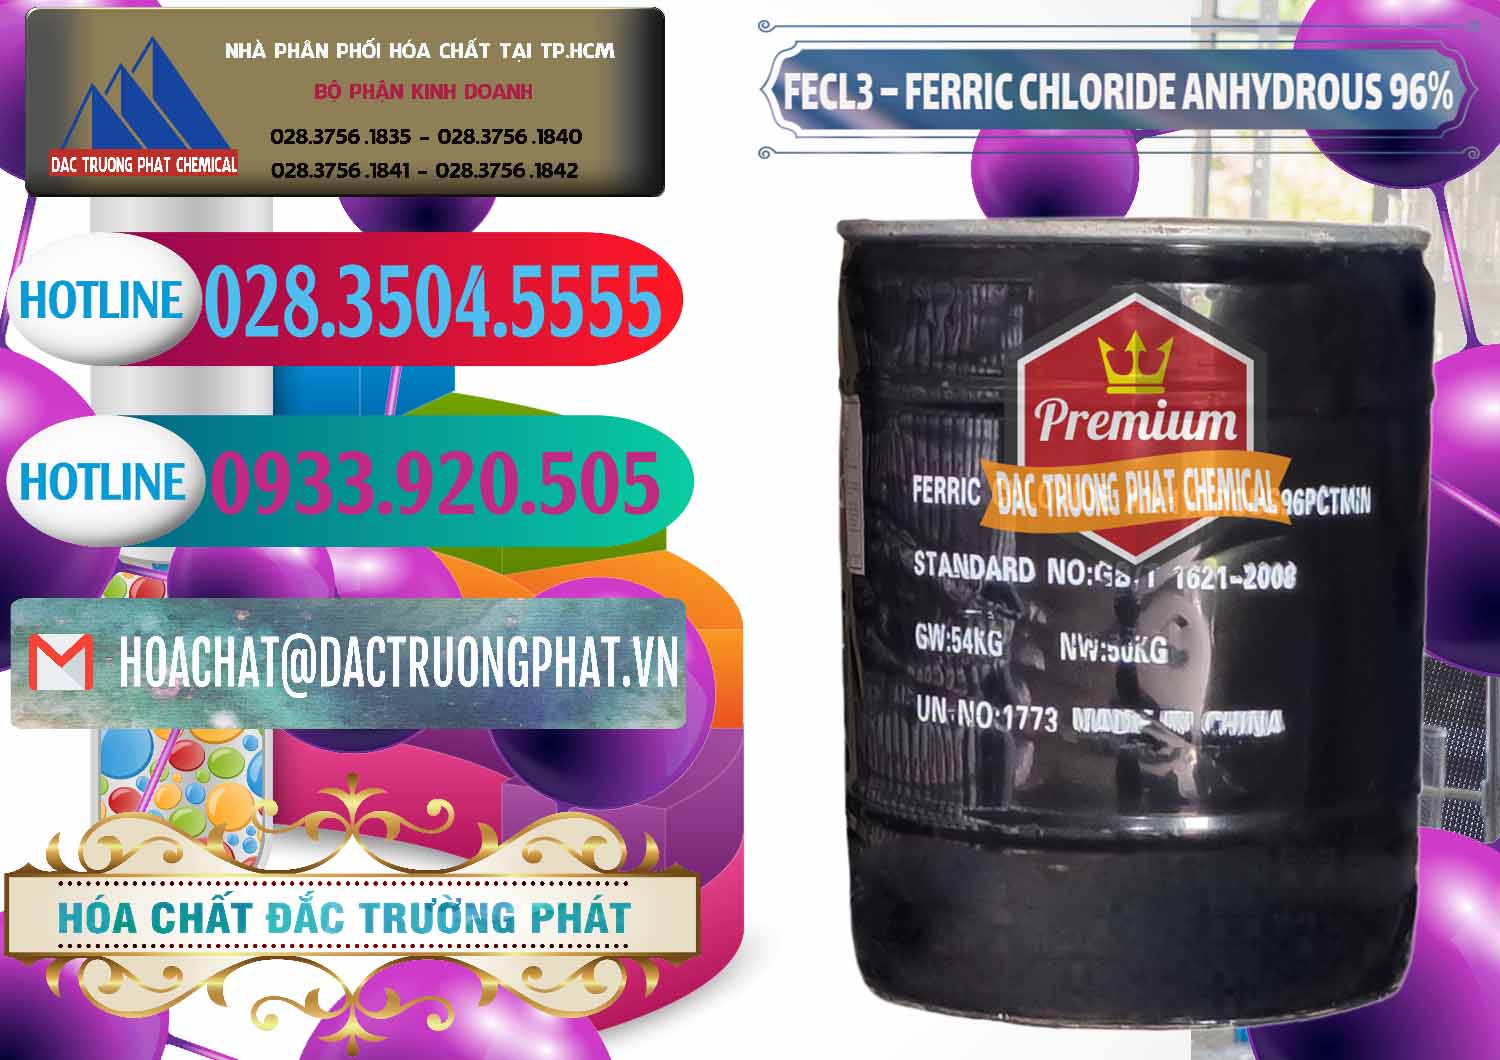 Công ty bán _ cung cấp FECL3 – Ferric Chloride Anhydrous 96% Trung Quốc China - 0065 - Nơi chuyên cung cấp - kinh doanh hóa chất tại TP.HCM - truongphat.vn